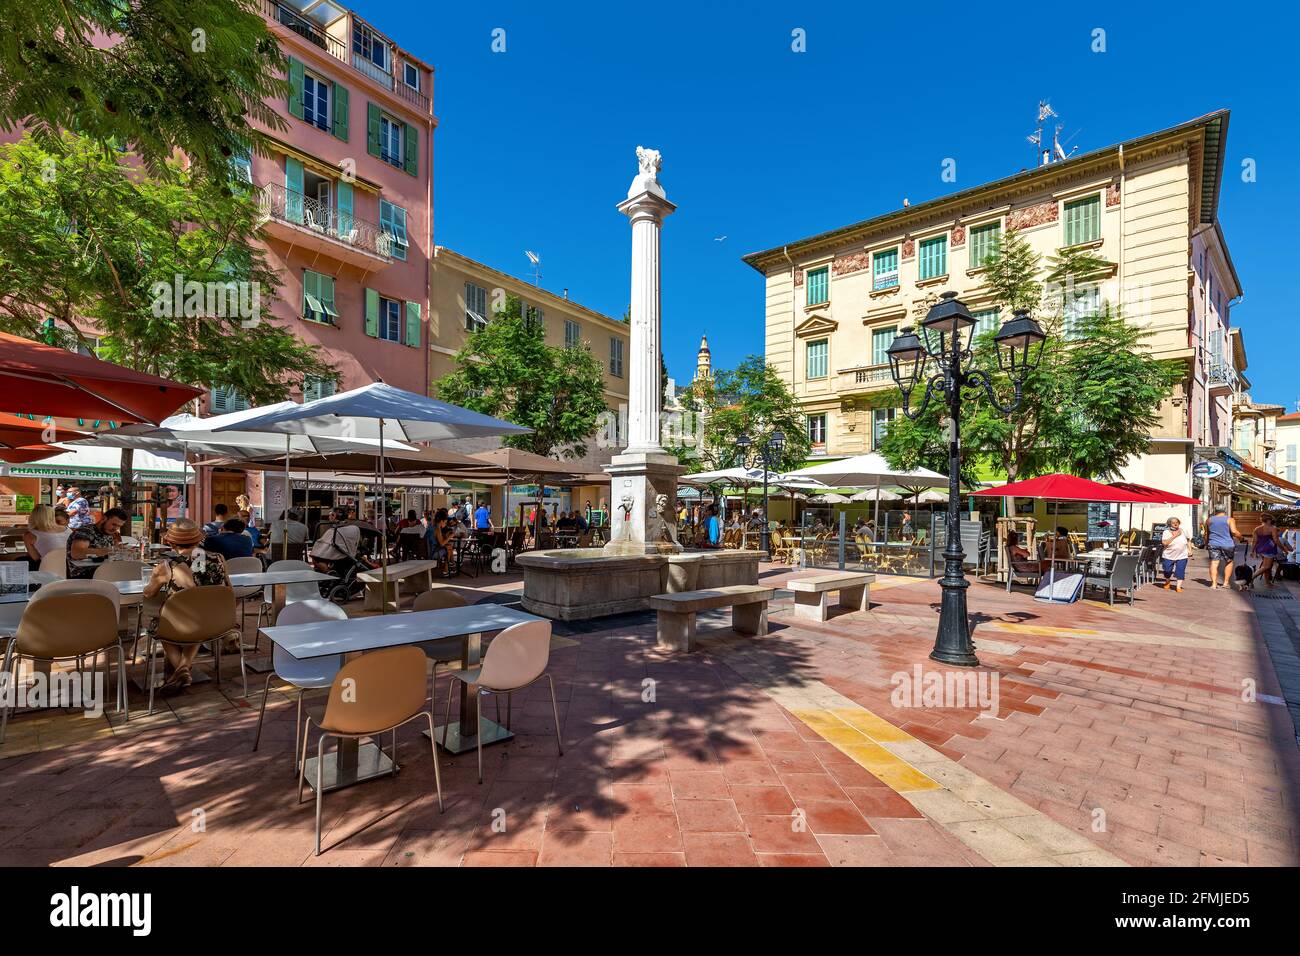 Persone sedute in ristoranti all'aperto sulla piccola piazza della città tra un bellissimo edificio sotto il cielo blu a Mentone, Francia. Foto Stock